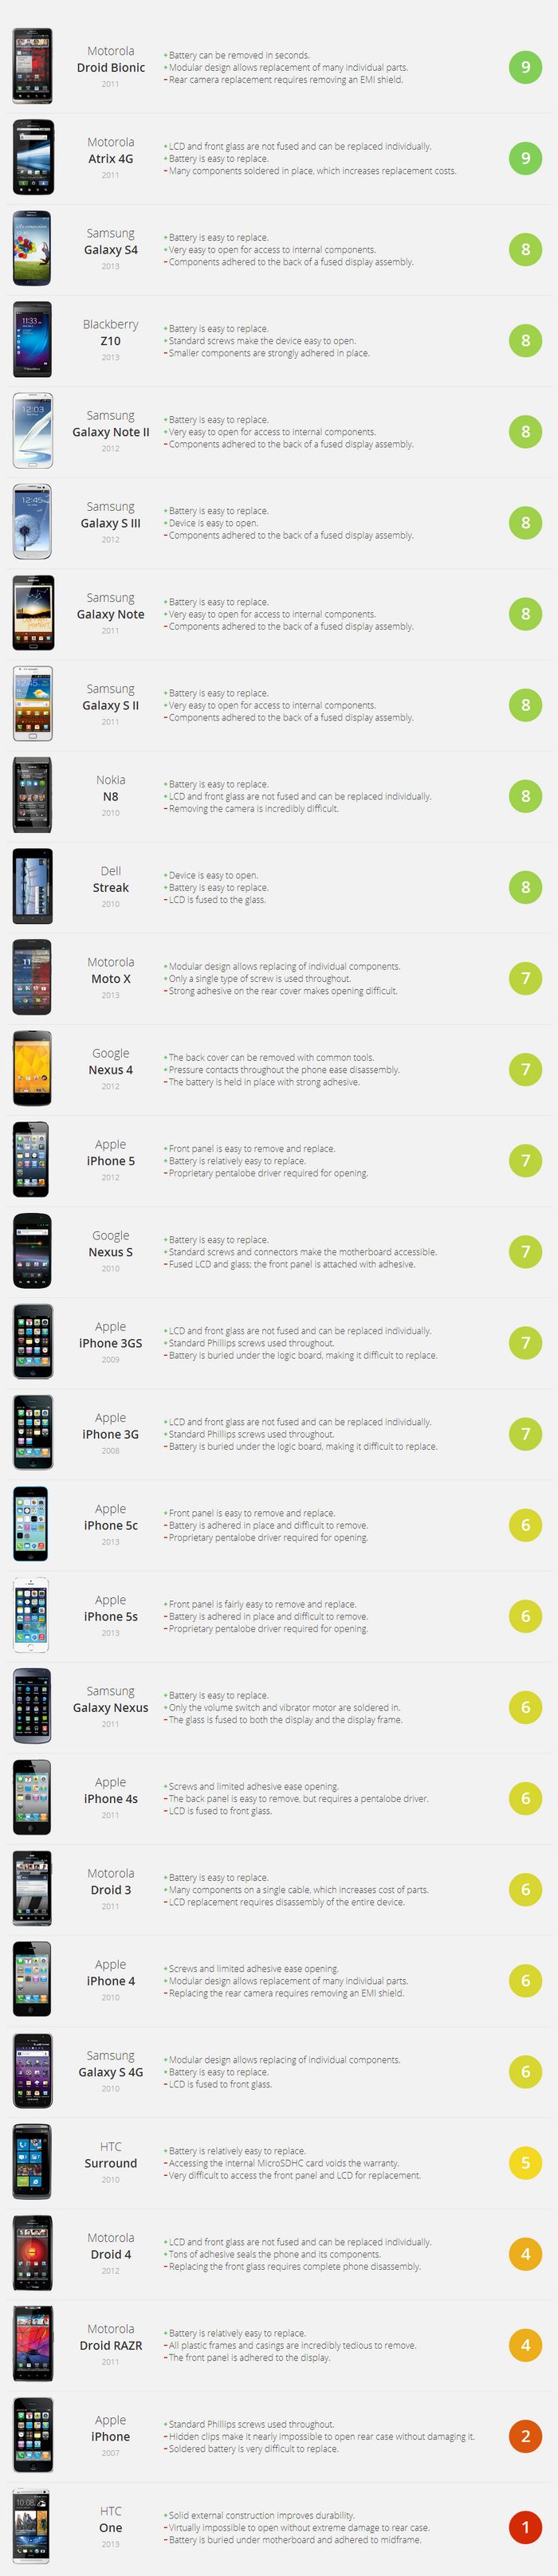 smartphone-reparability-index-2013